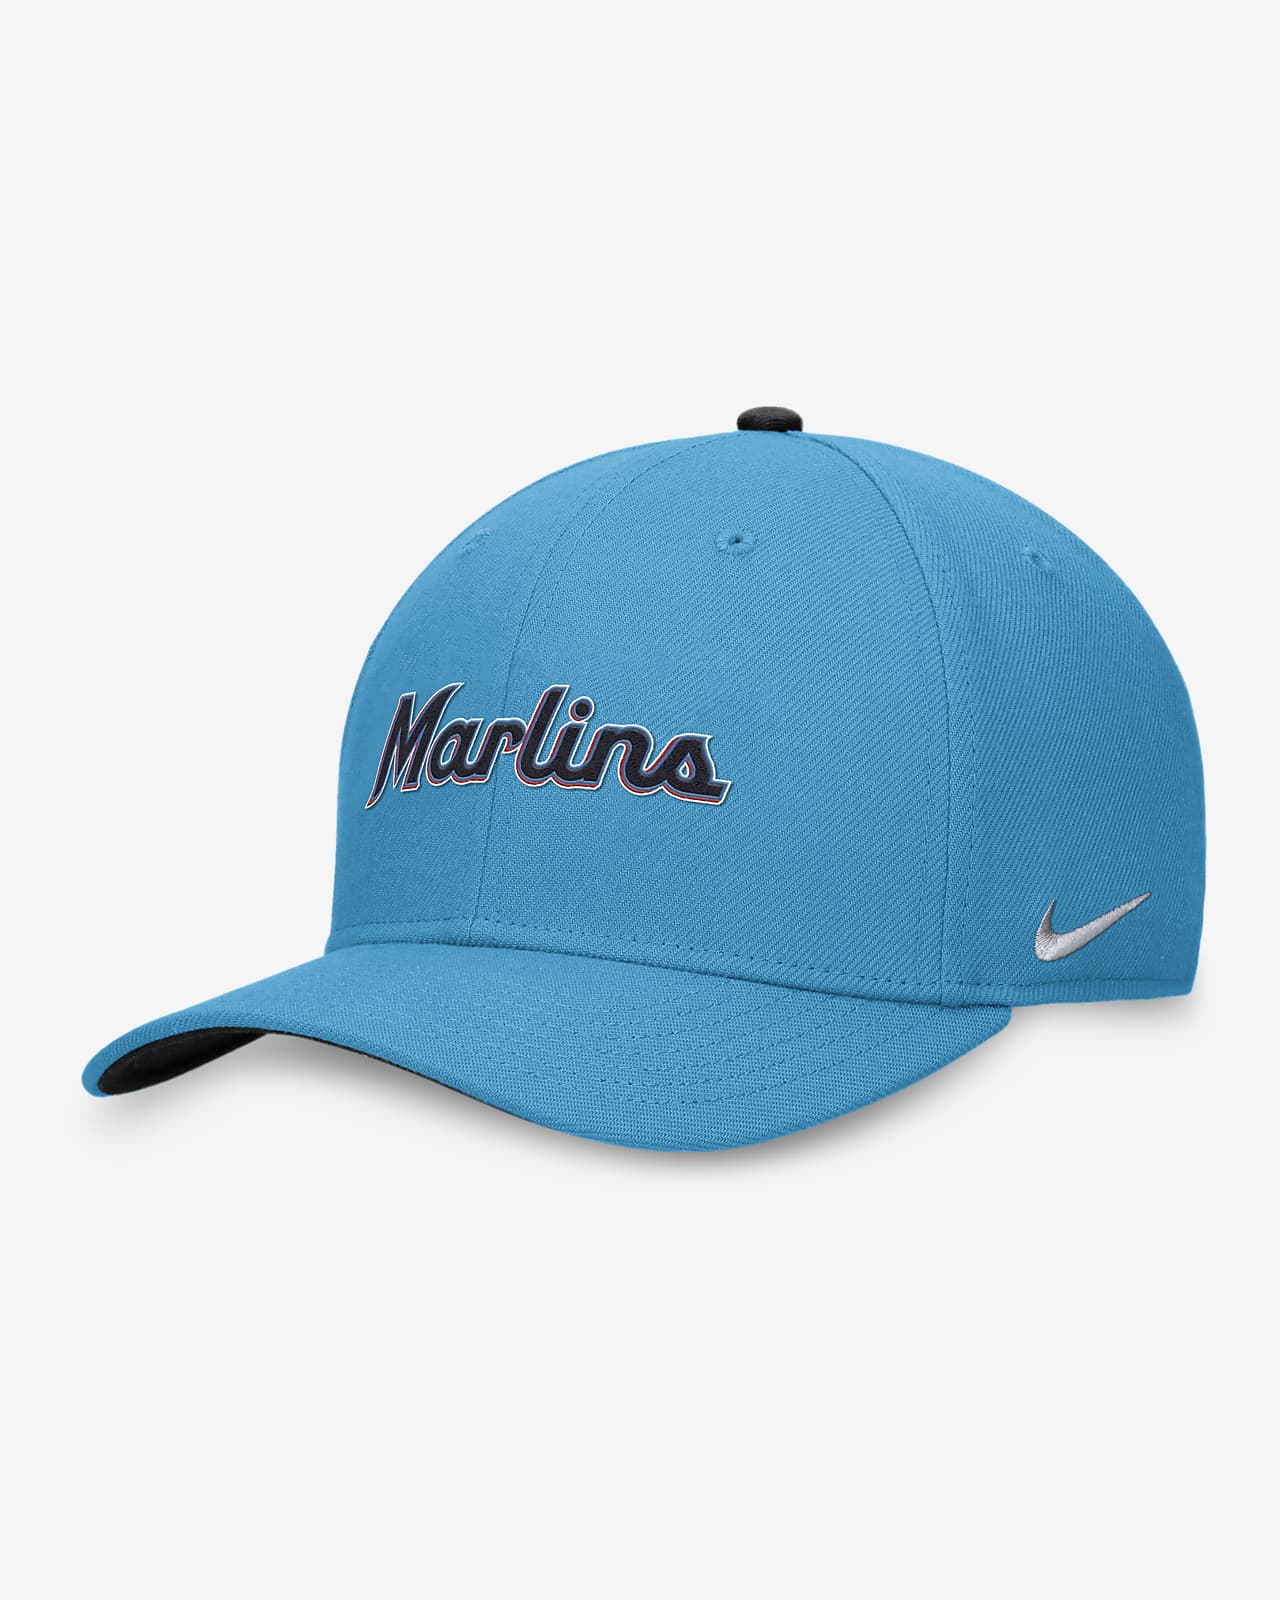 Miami Marlins Classic99 Swoosh Men's Nike Dri-FIT MLB Hat.